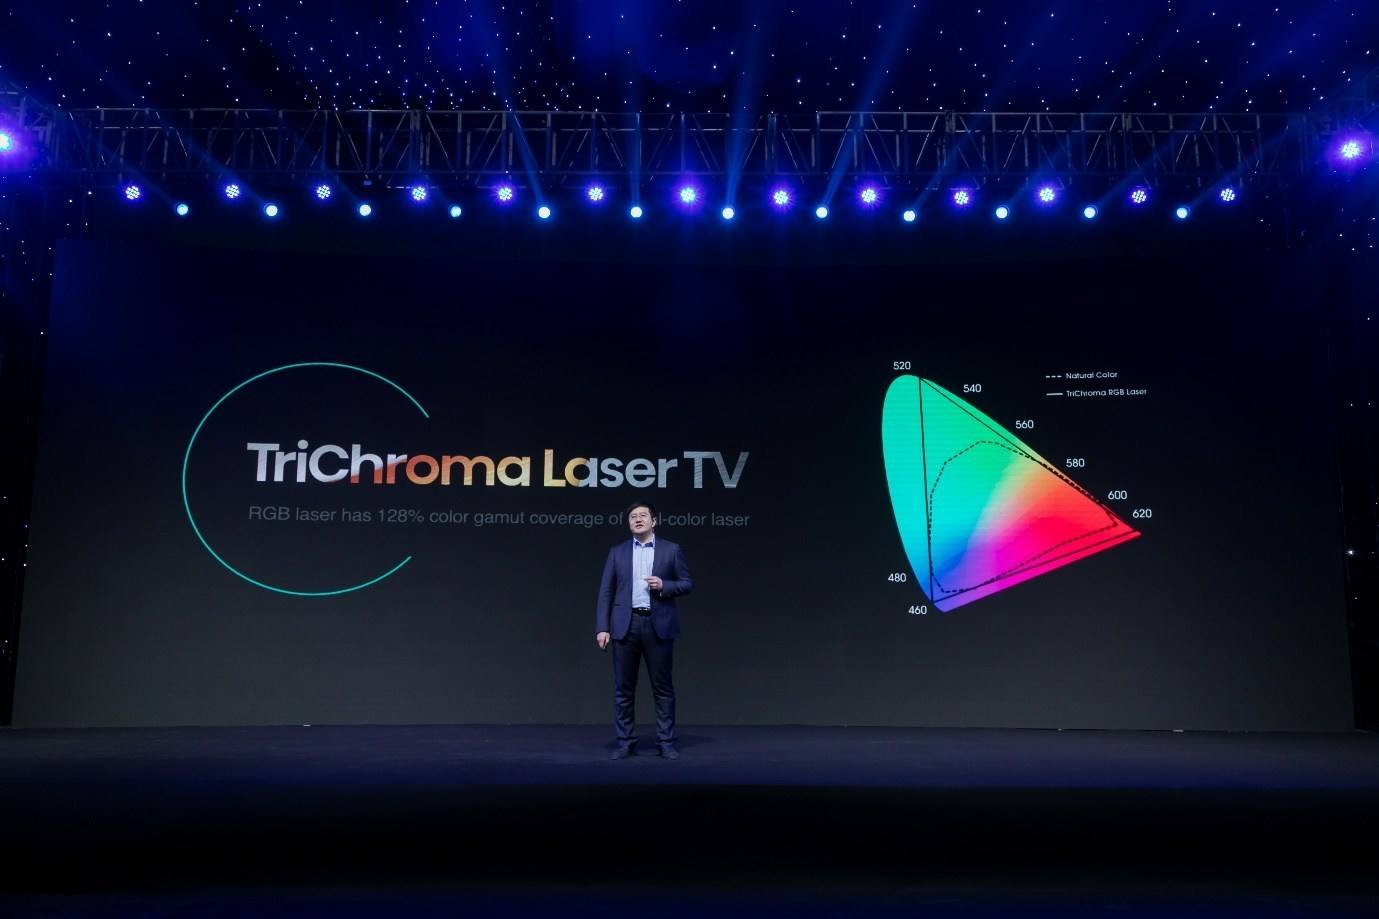 Hisense Announces TriChroma Laser TV at CES 2021